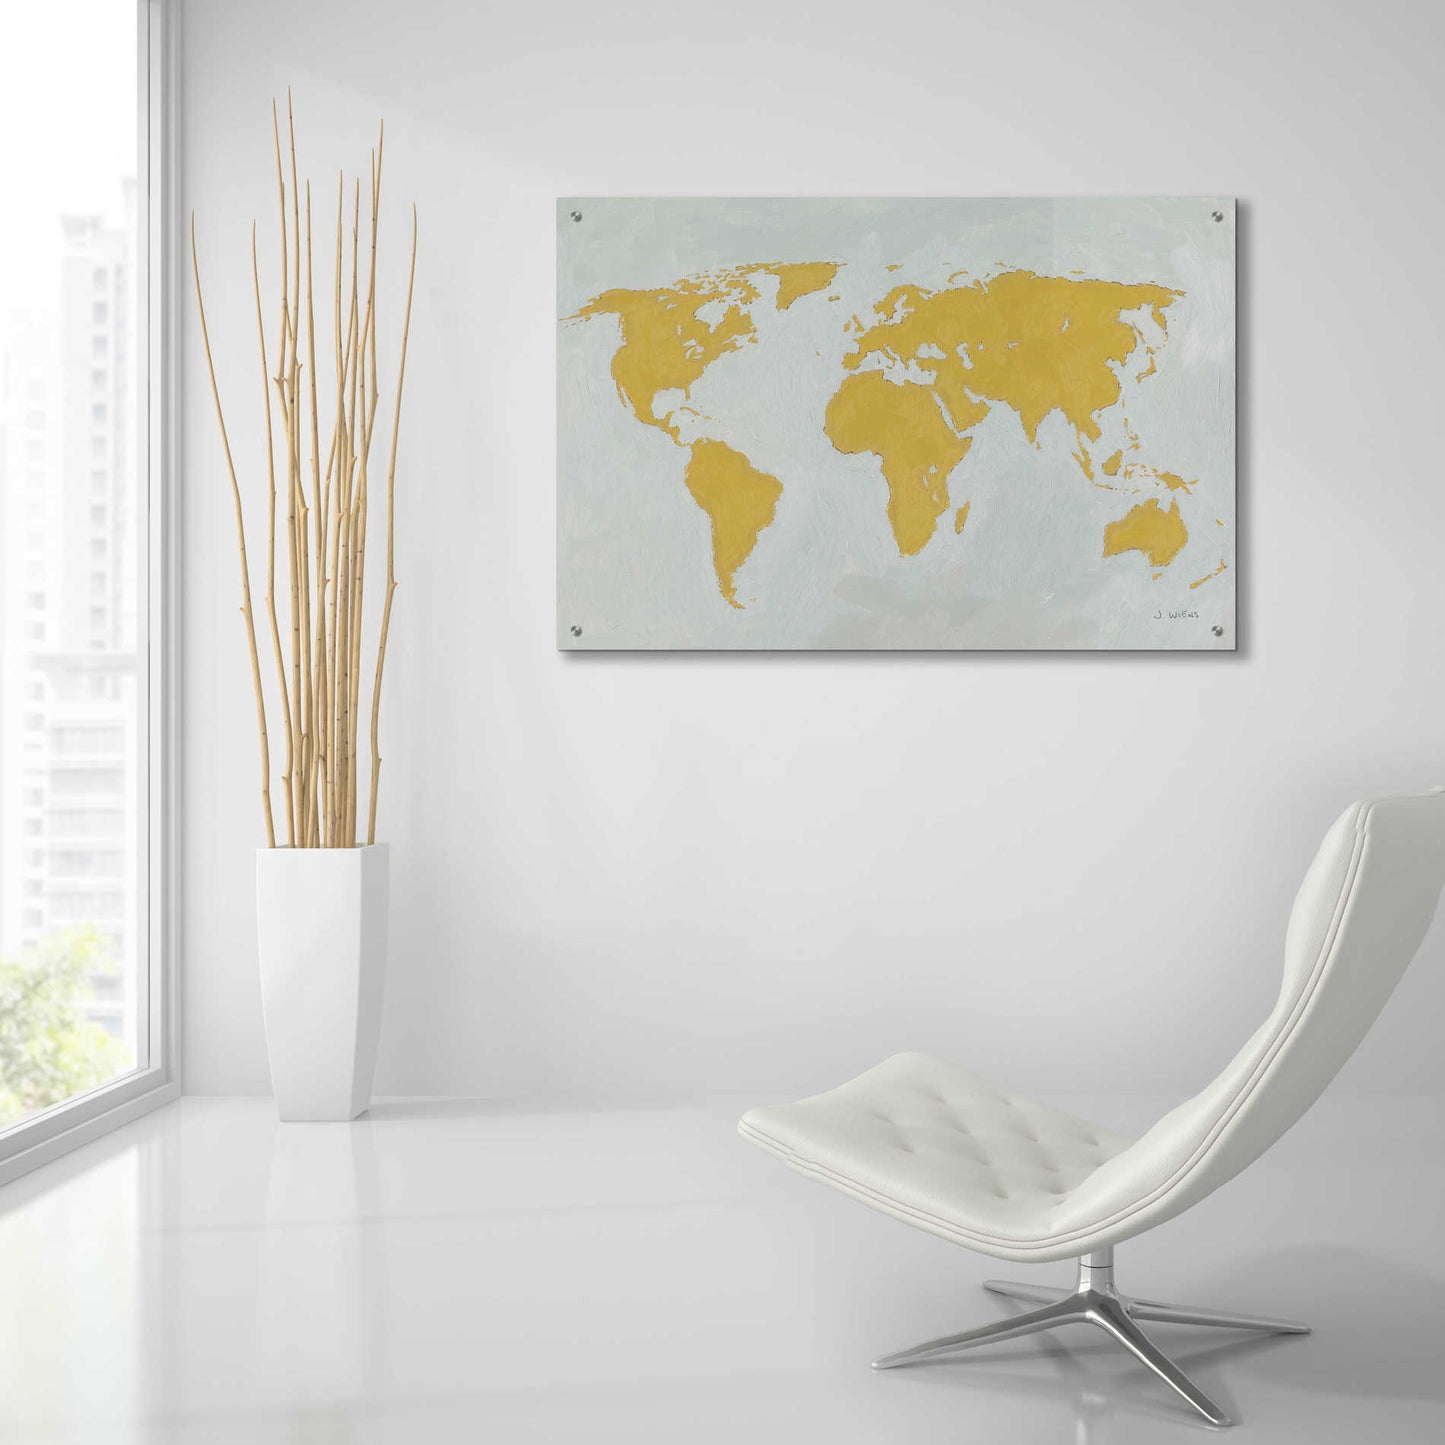 Epic Art 'Golden World' by James Wiens, Acrylic Glass Wall Art,36x24